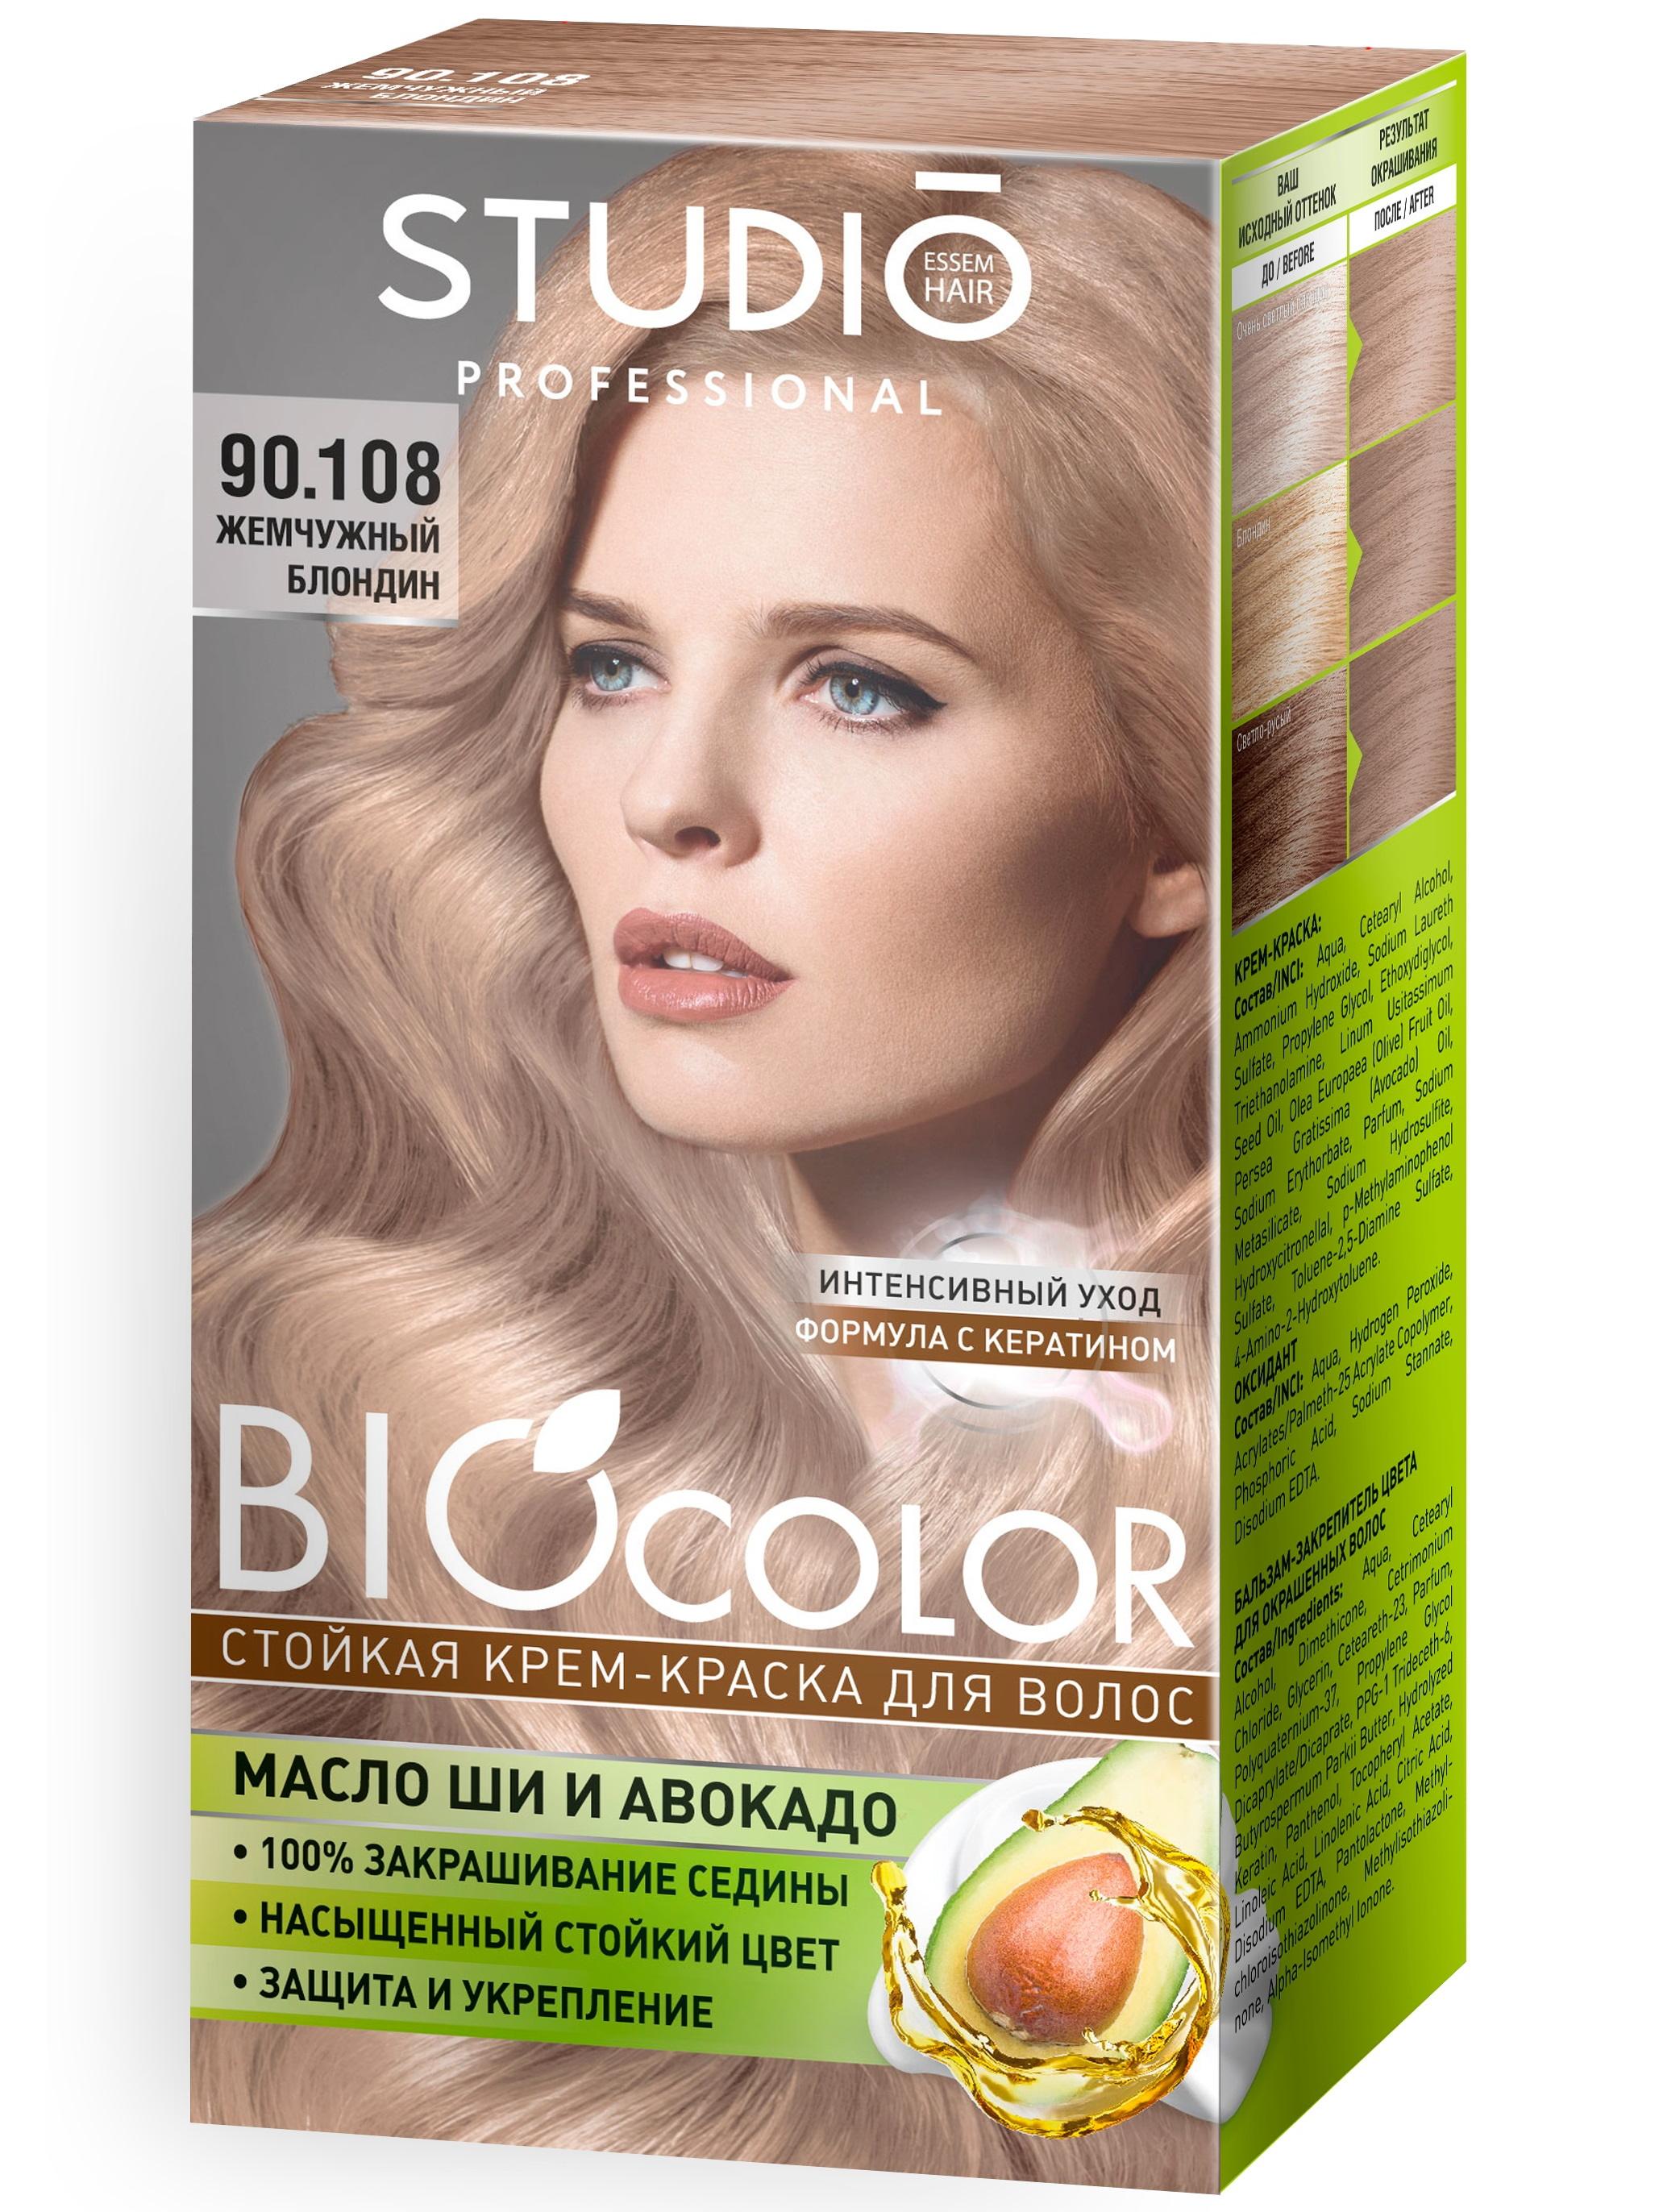 Крем-краска для волос Biocolor стойкая 90.108 жемчужный блондин, 15 мл., картон